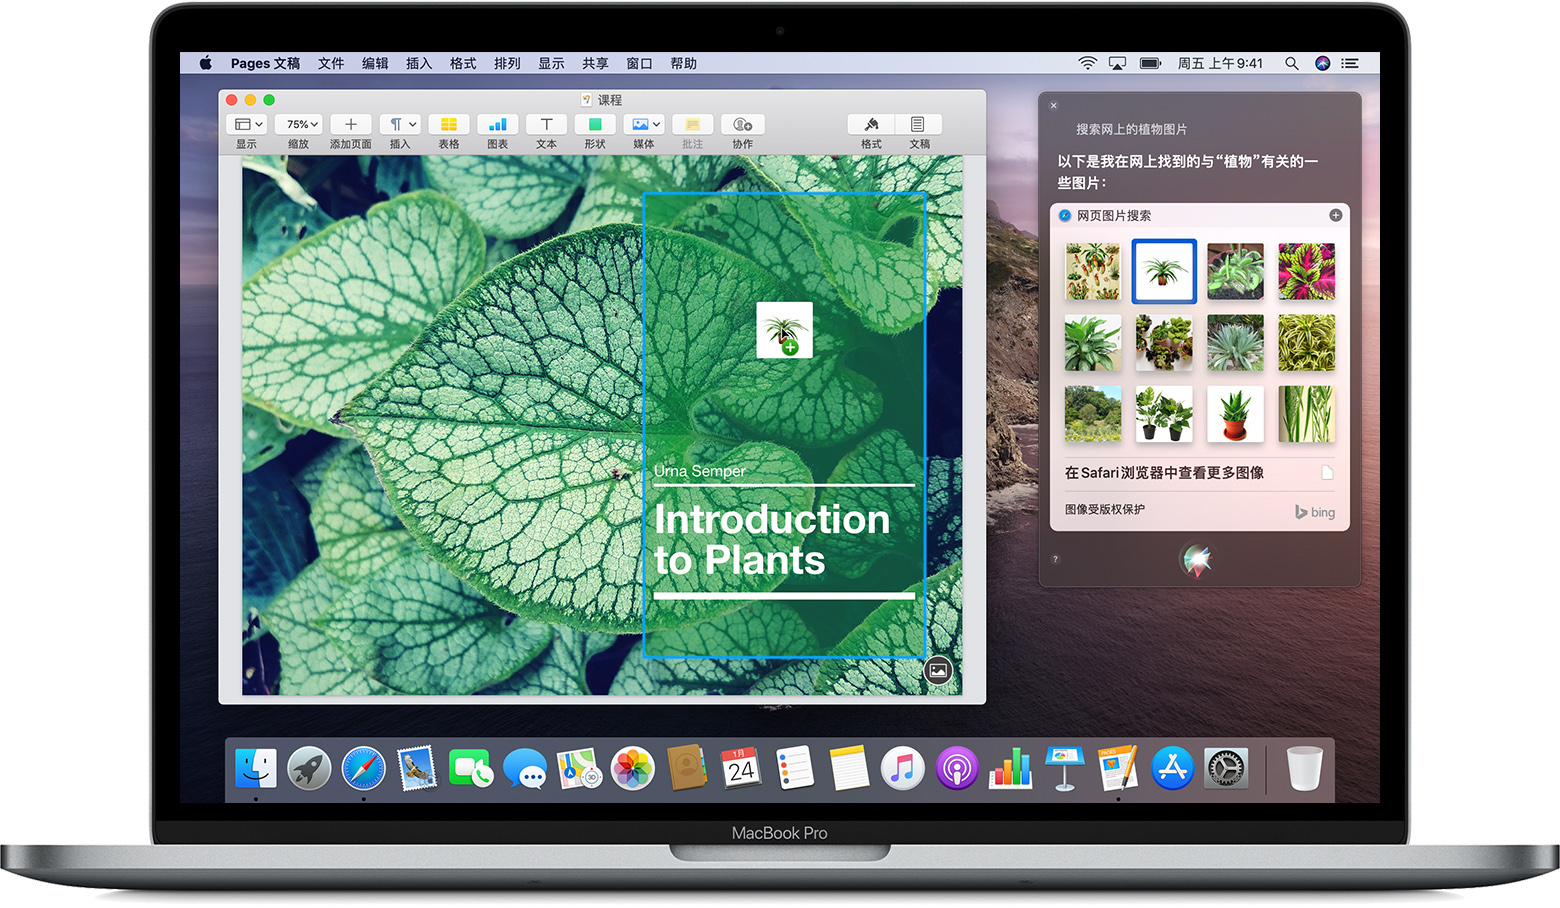 如何在Mac上使用Siri - 基本操作以及设置 - Macbook Pro用户手册